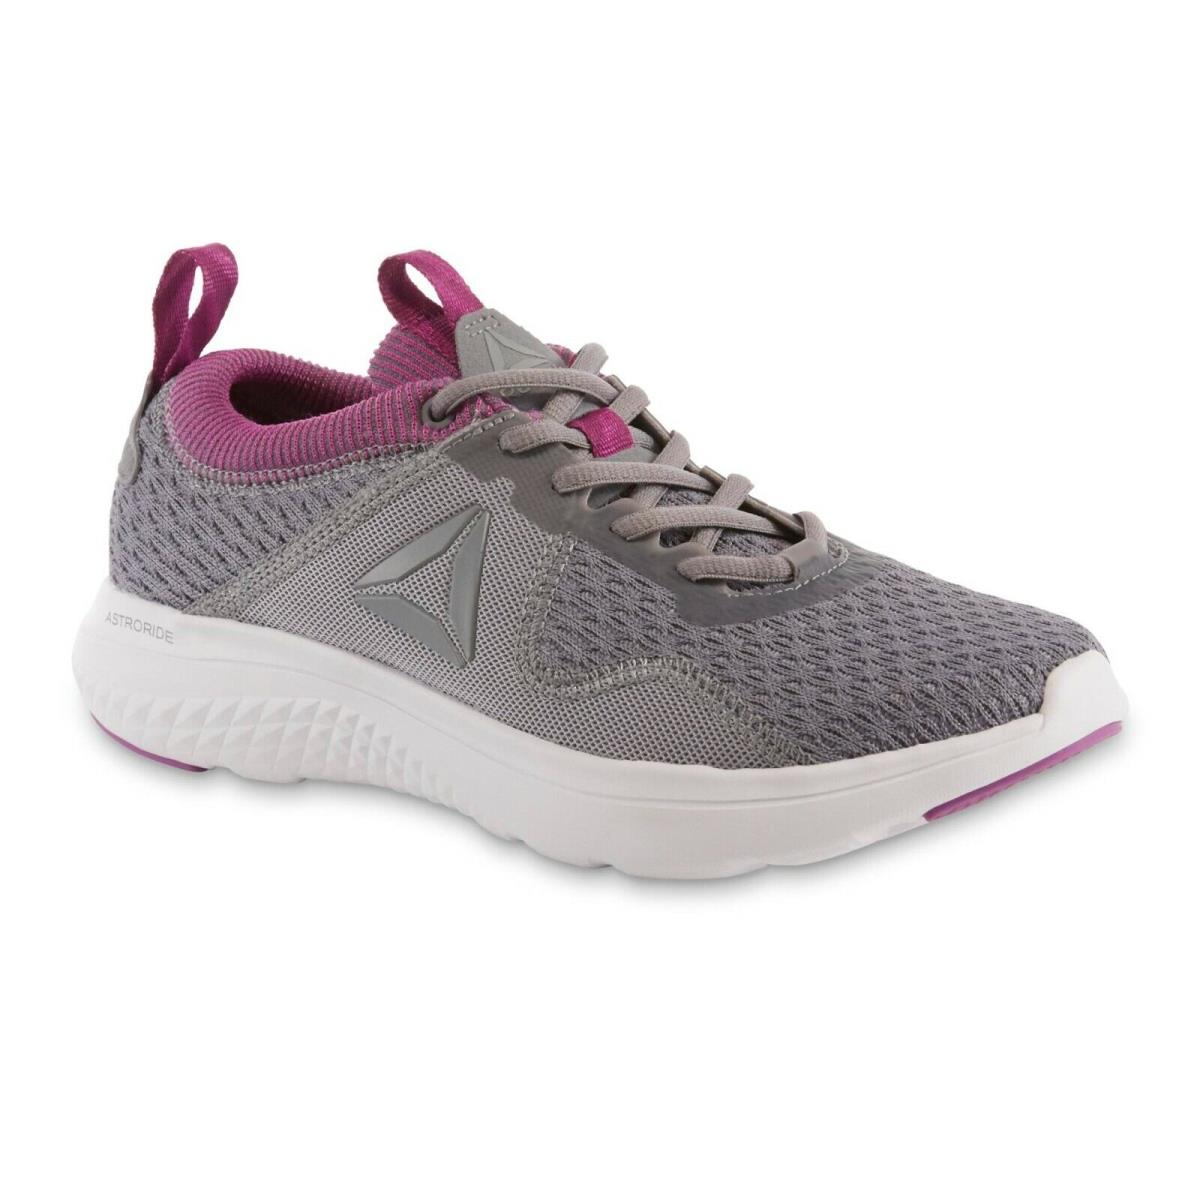 Reebok Ladies Running Tennis Shoe Grey Size 9 1/2 Med